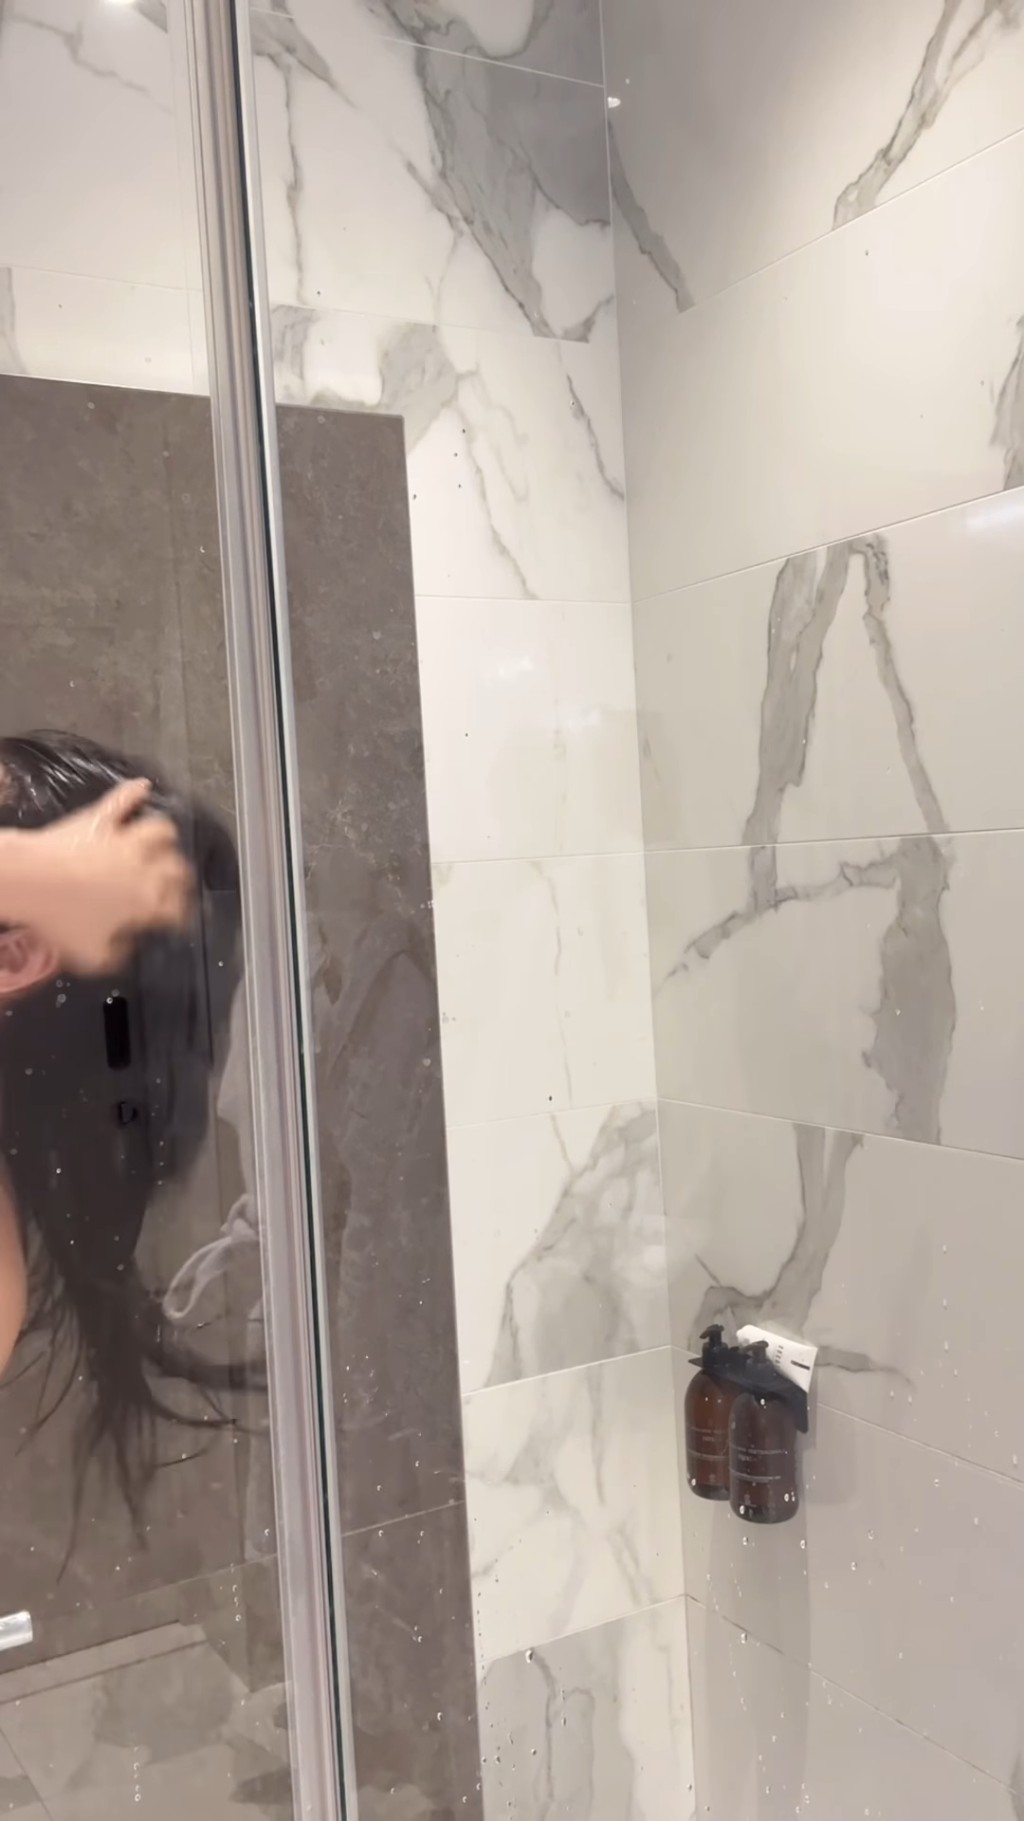 影片初段见到林宝玉在洗头，受镜头所限，未能看到甚么。